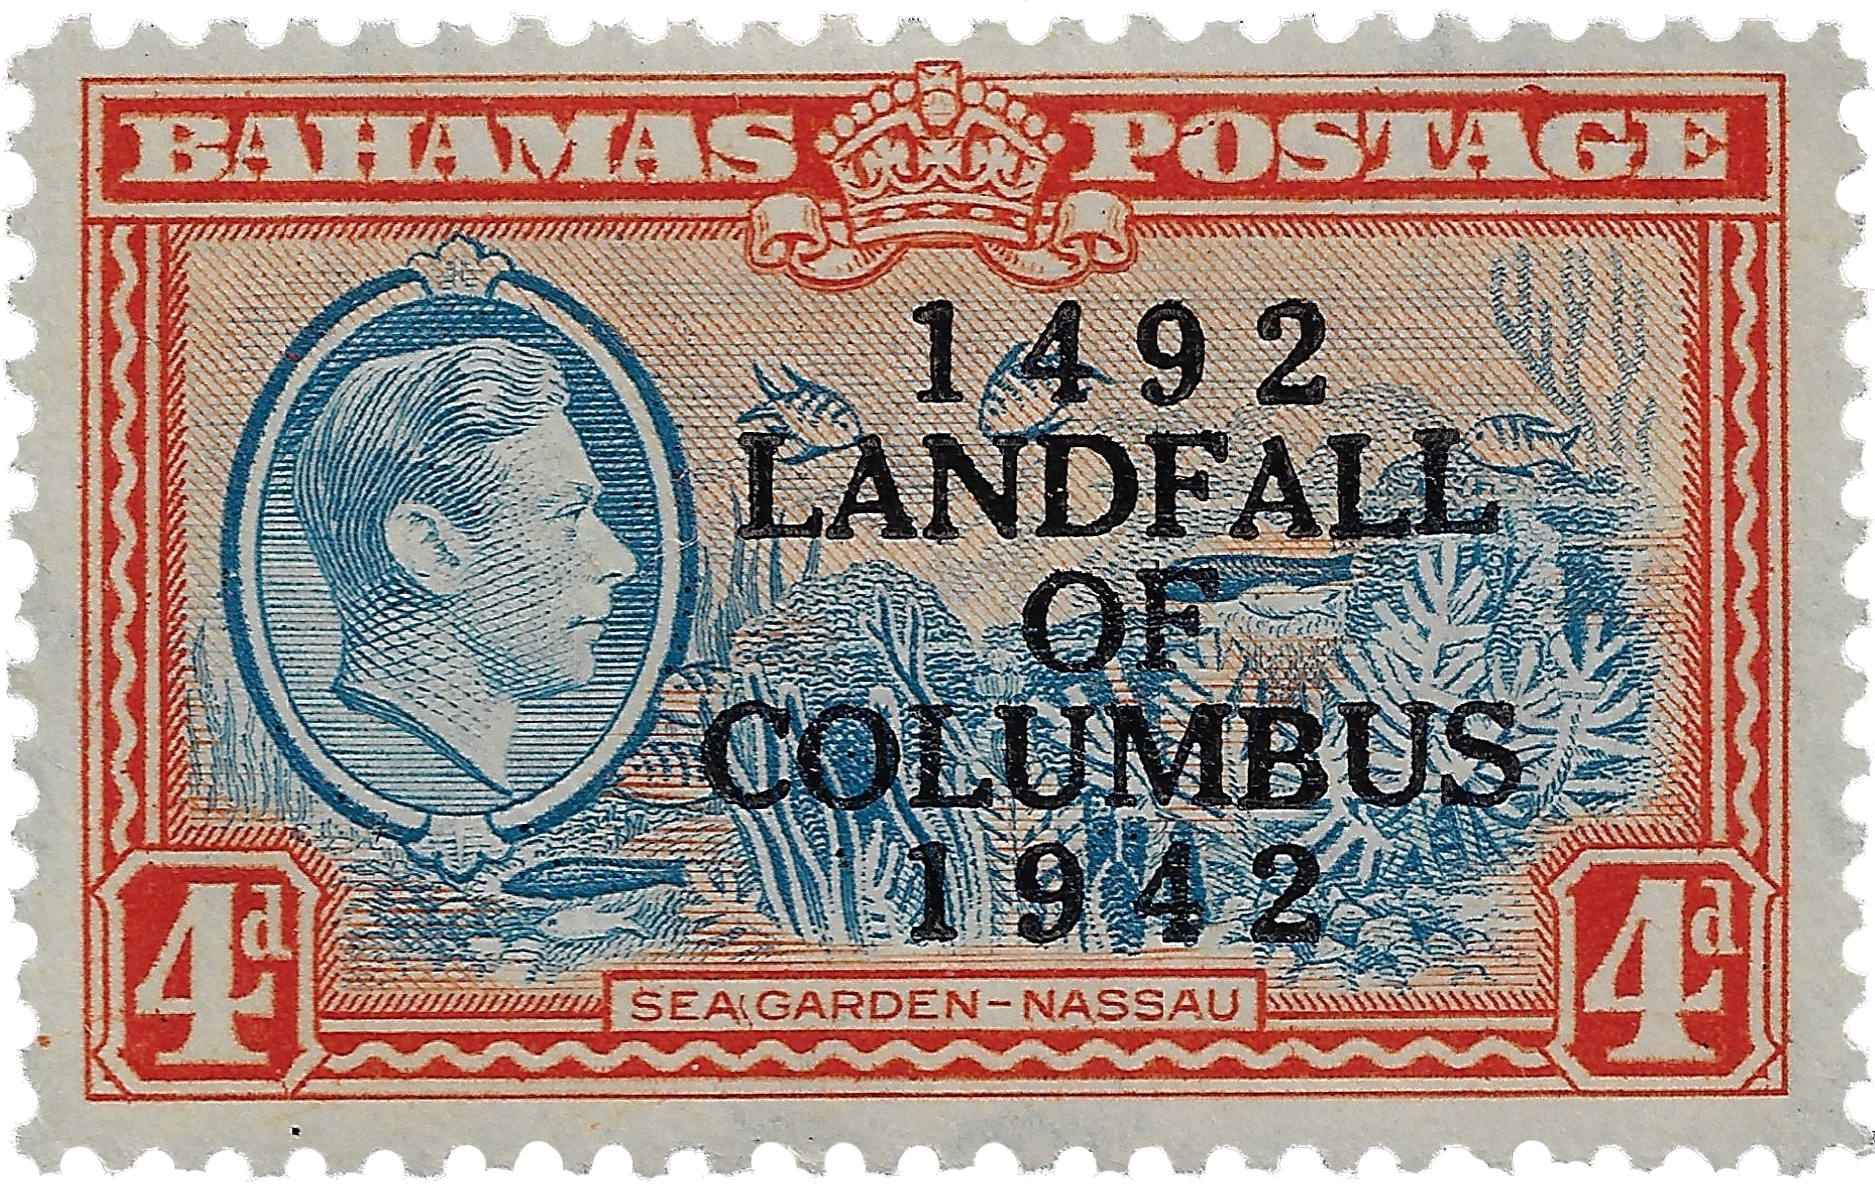 4d 1942, Four Dollars, Sea Garden-Nassau, 1492 Landfall of Columbus